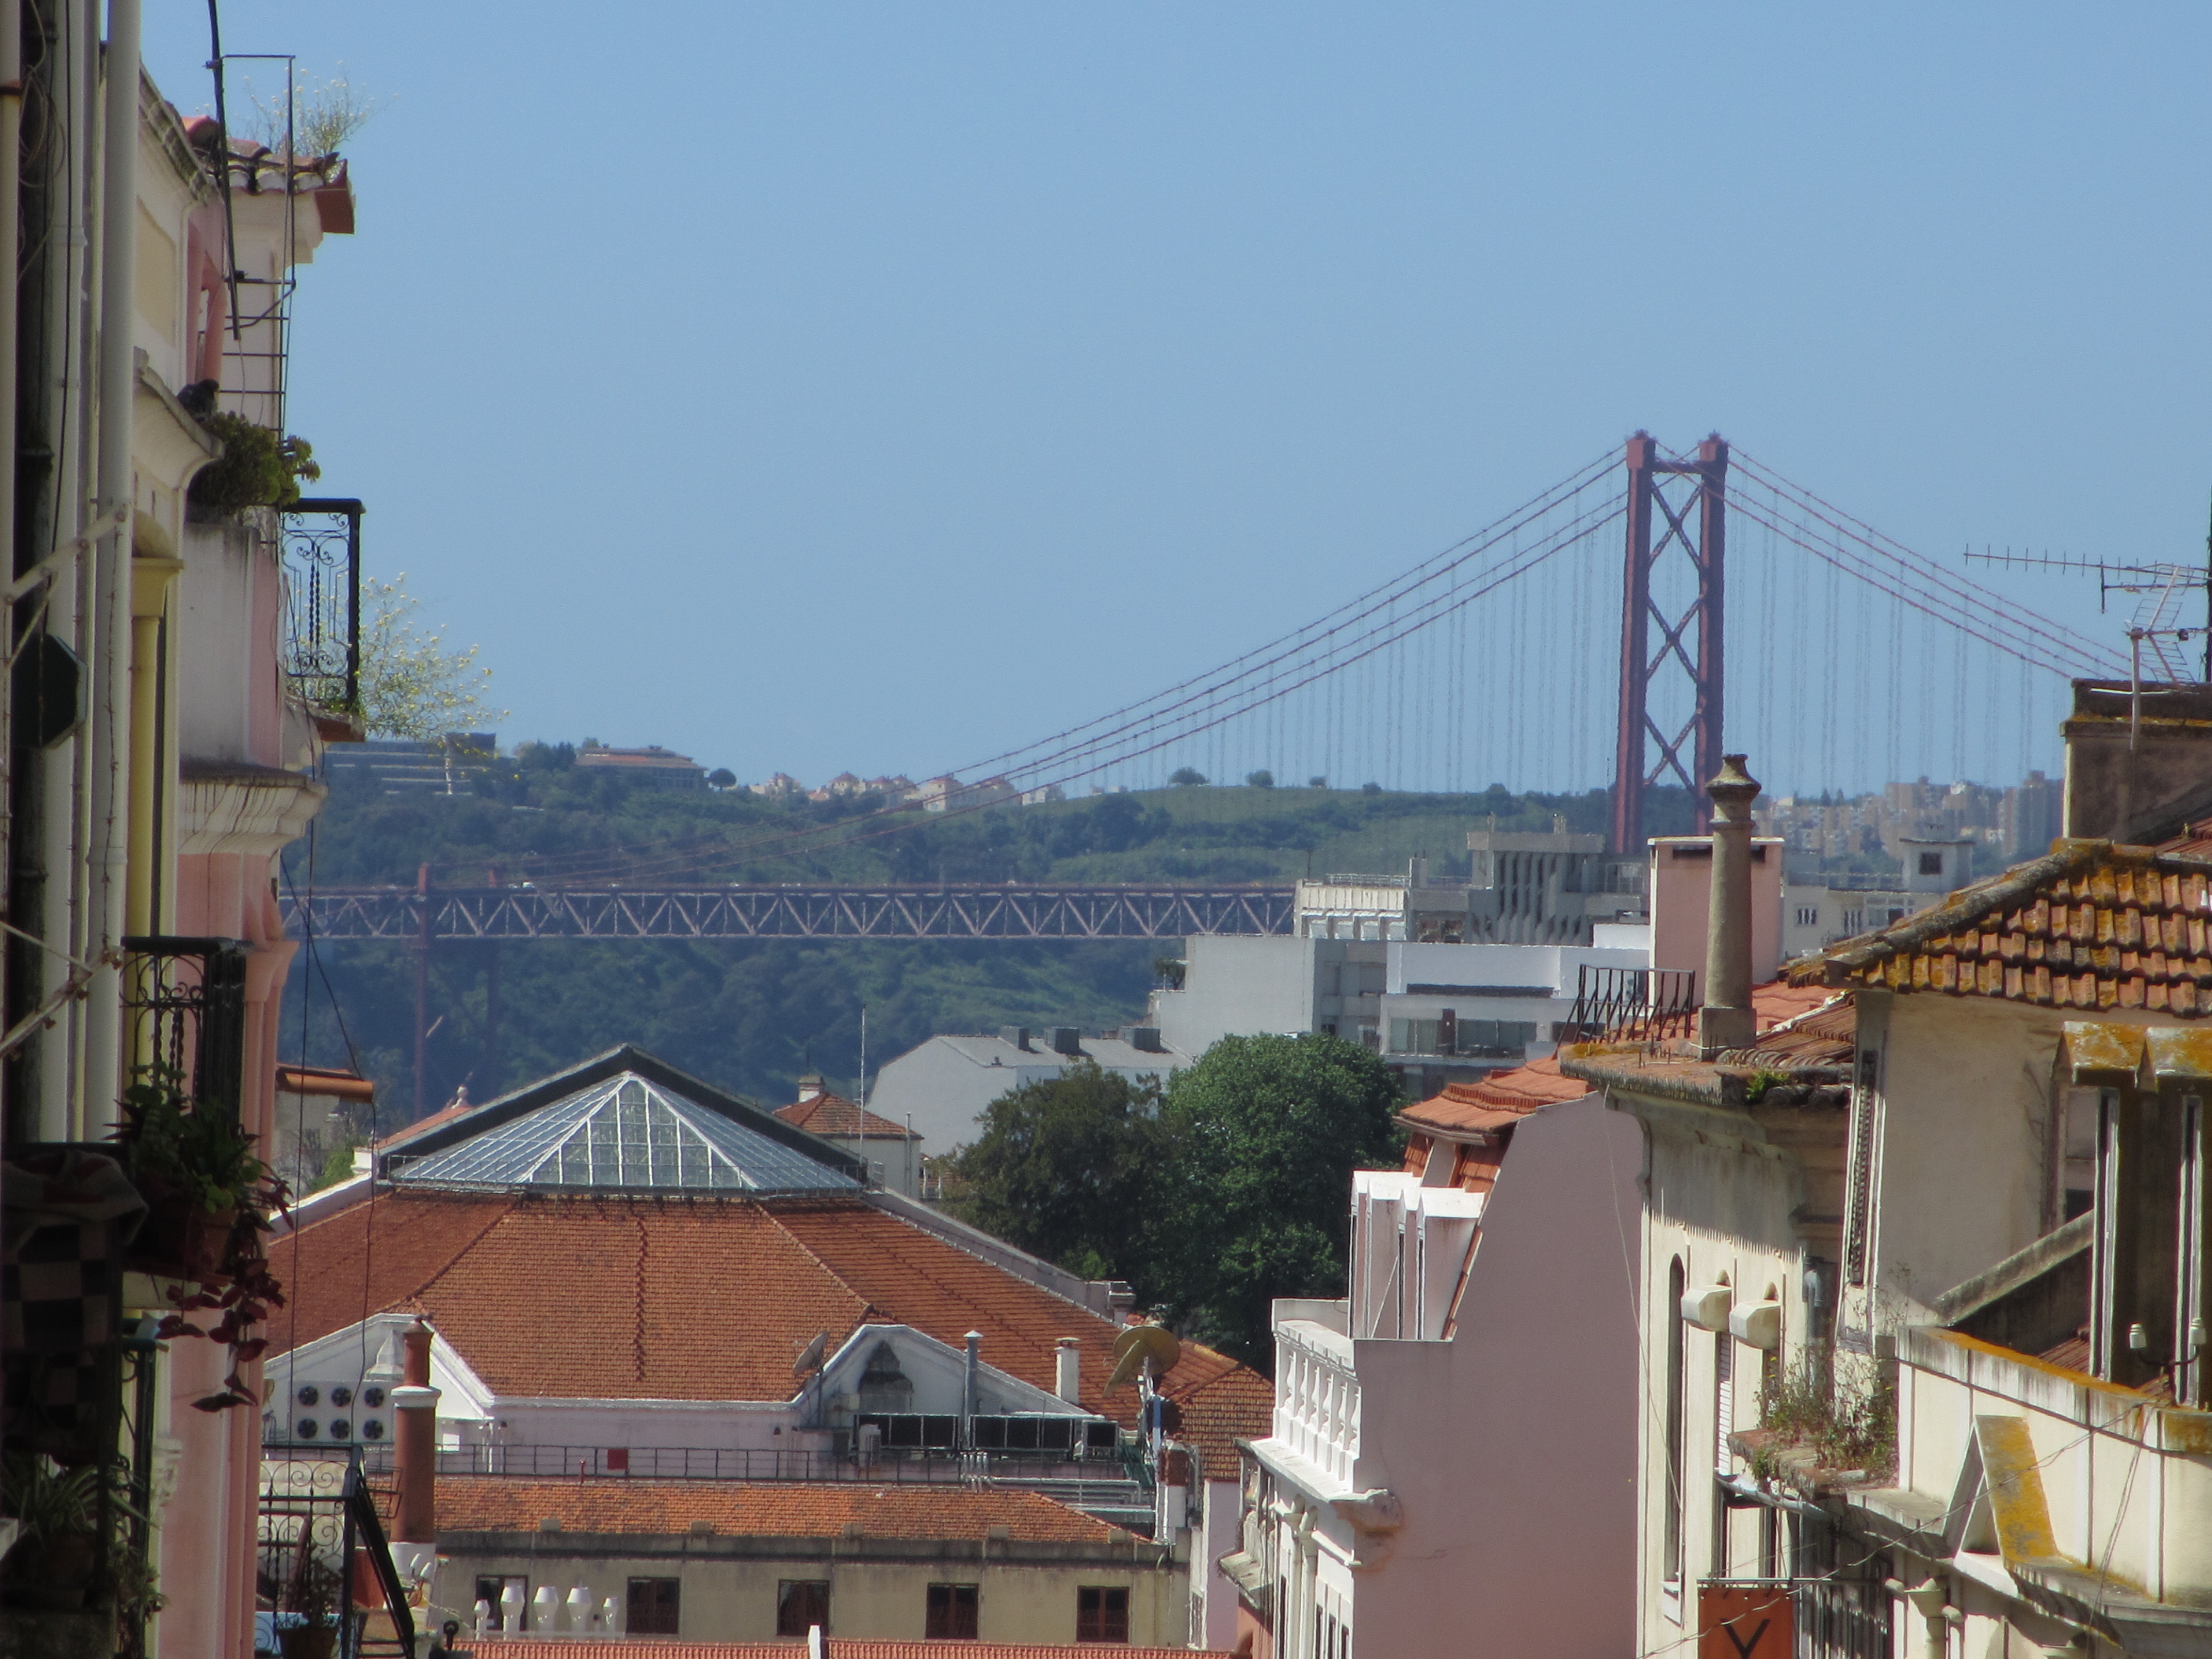 Les quartiers de Lisbonne